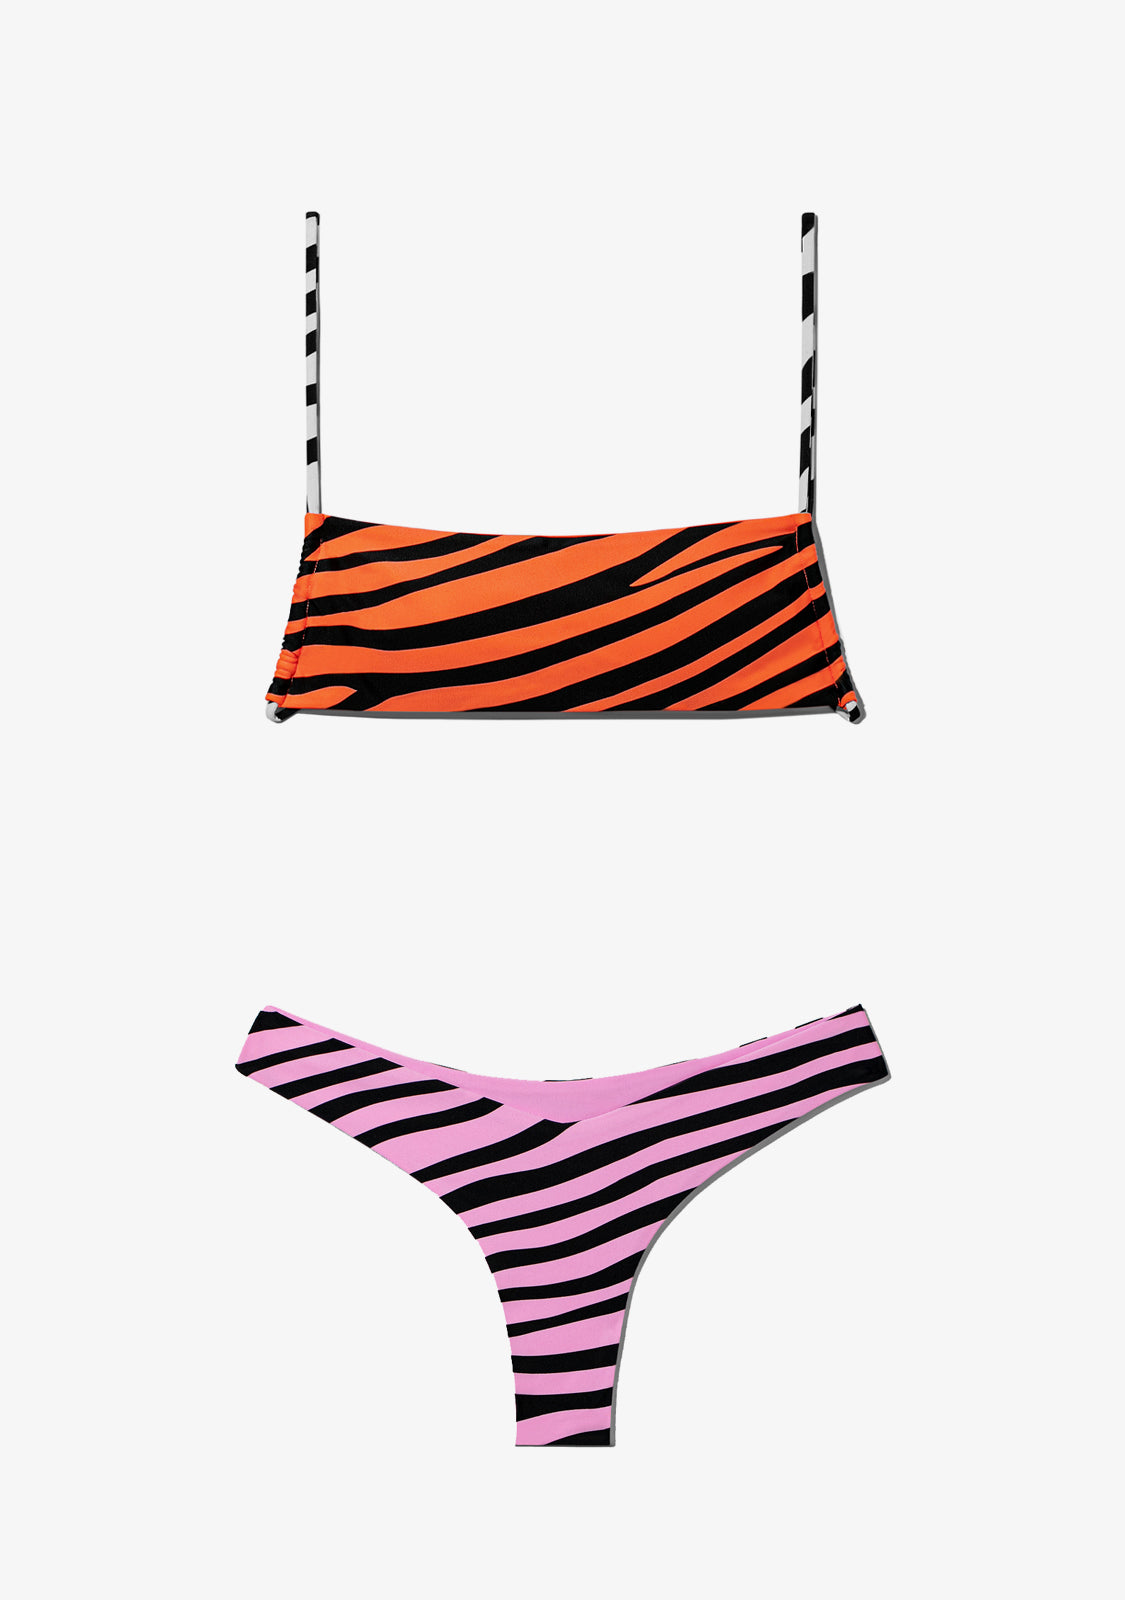 Fiji Top Zebra Orange + Fiji Bottom Zebra Pink Bikini